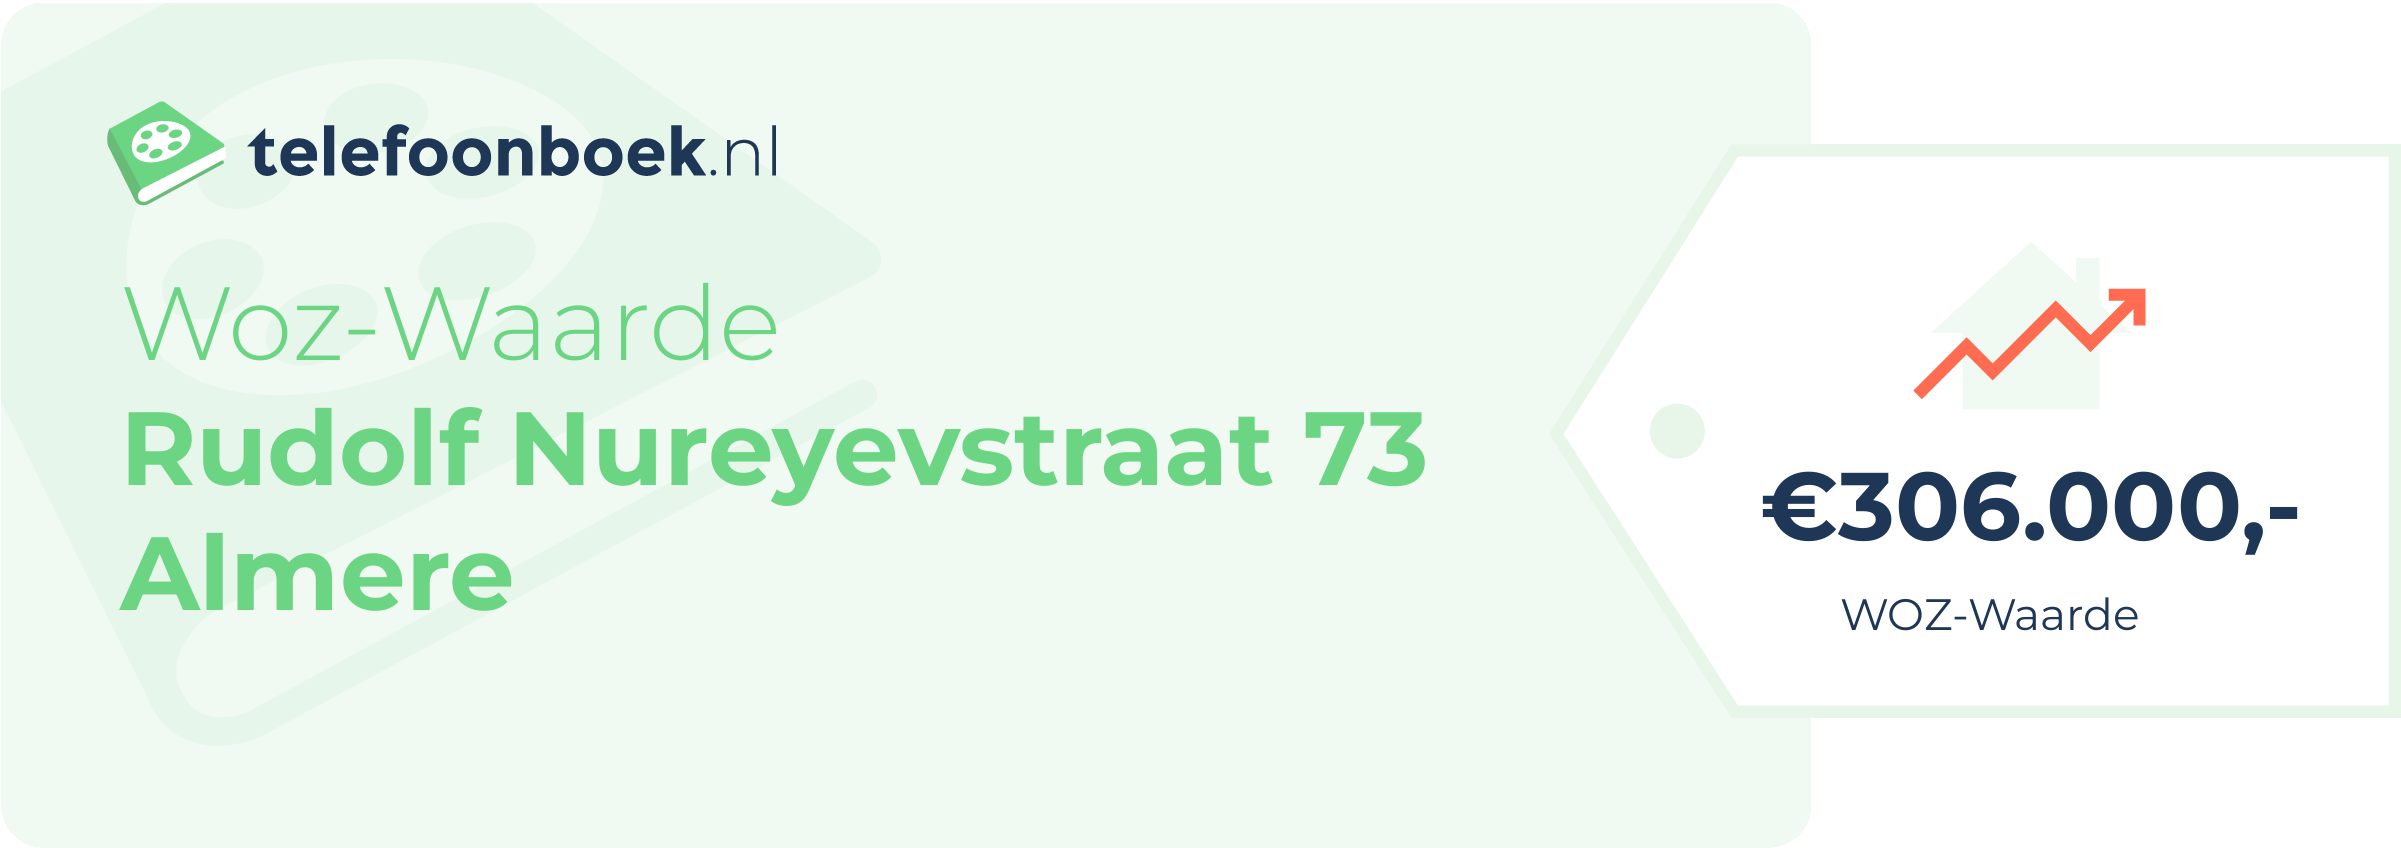 WOZ-waarde Rudolf Nureyevstraat 73 Almere